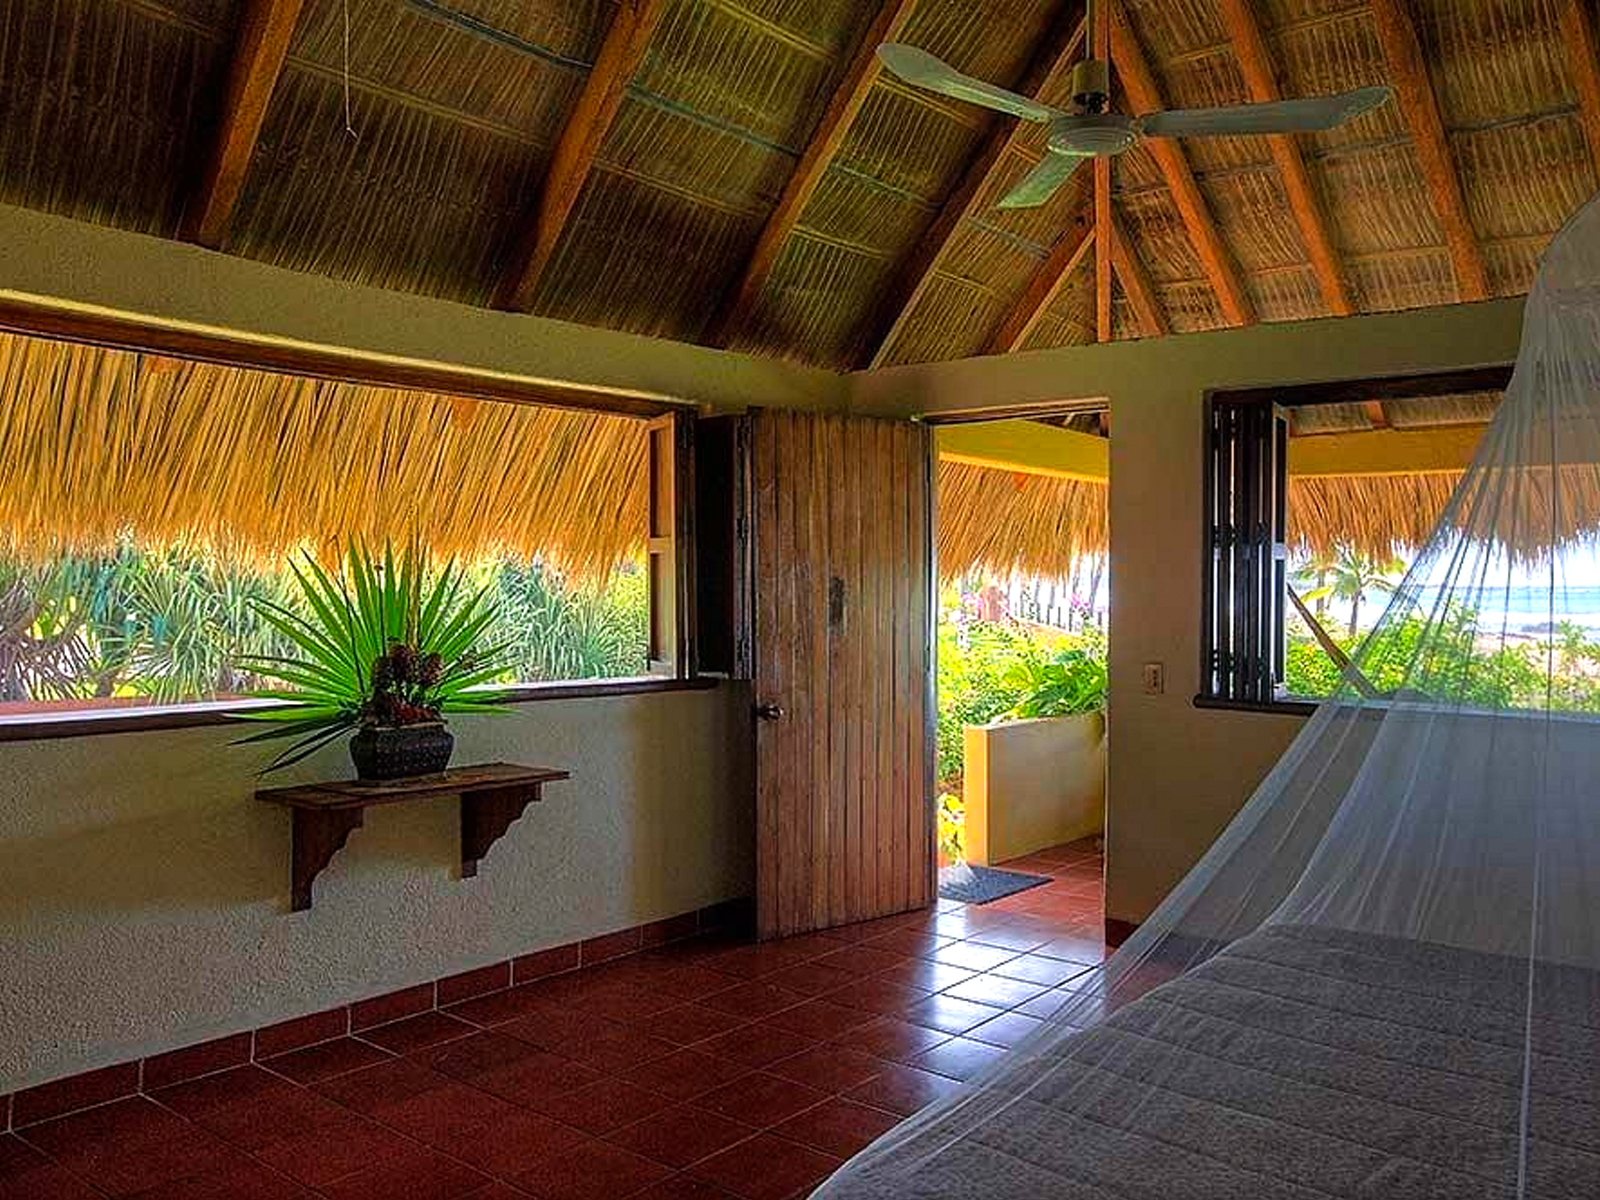 majahua-palms-saladita-hotel-for-sale